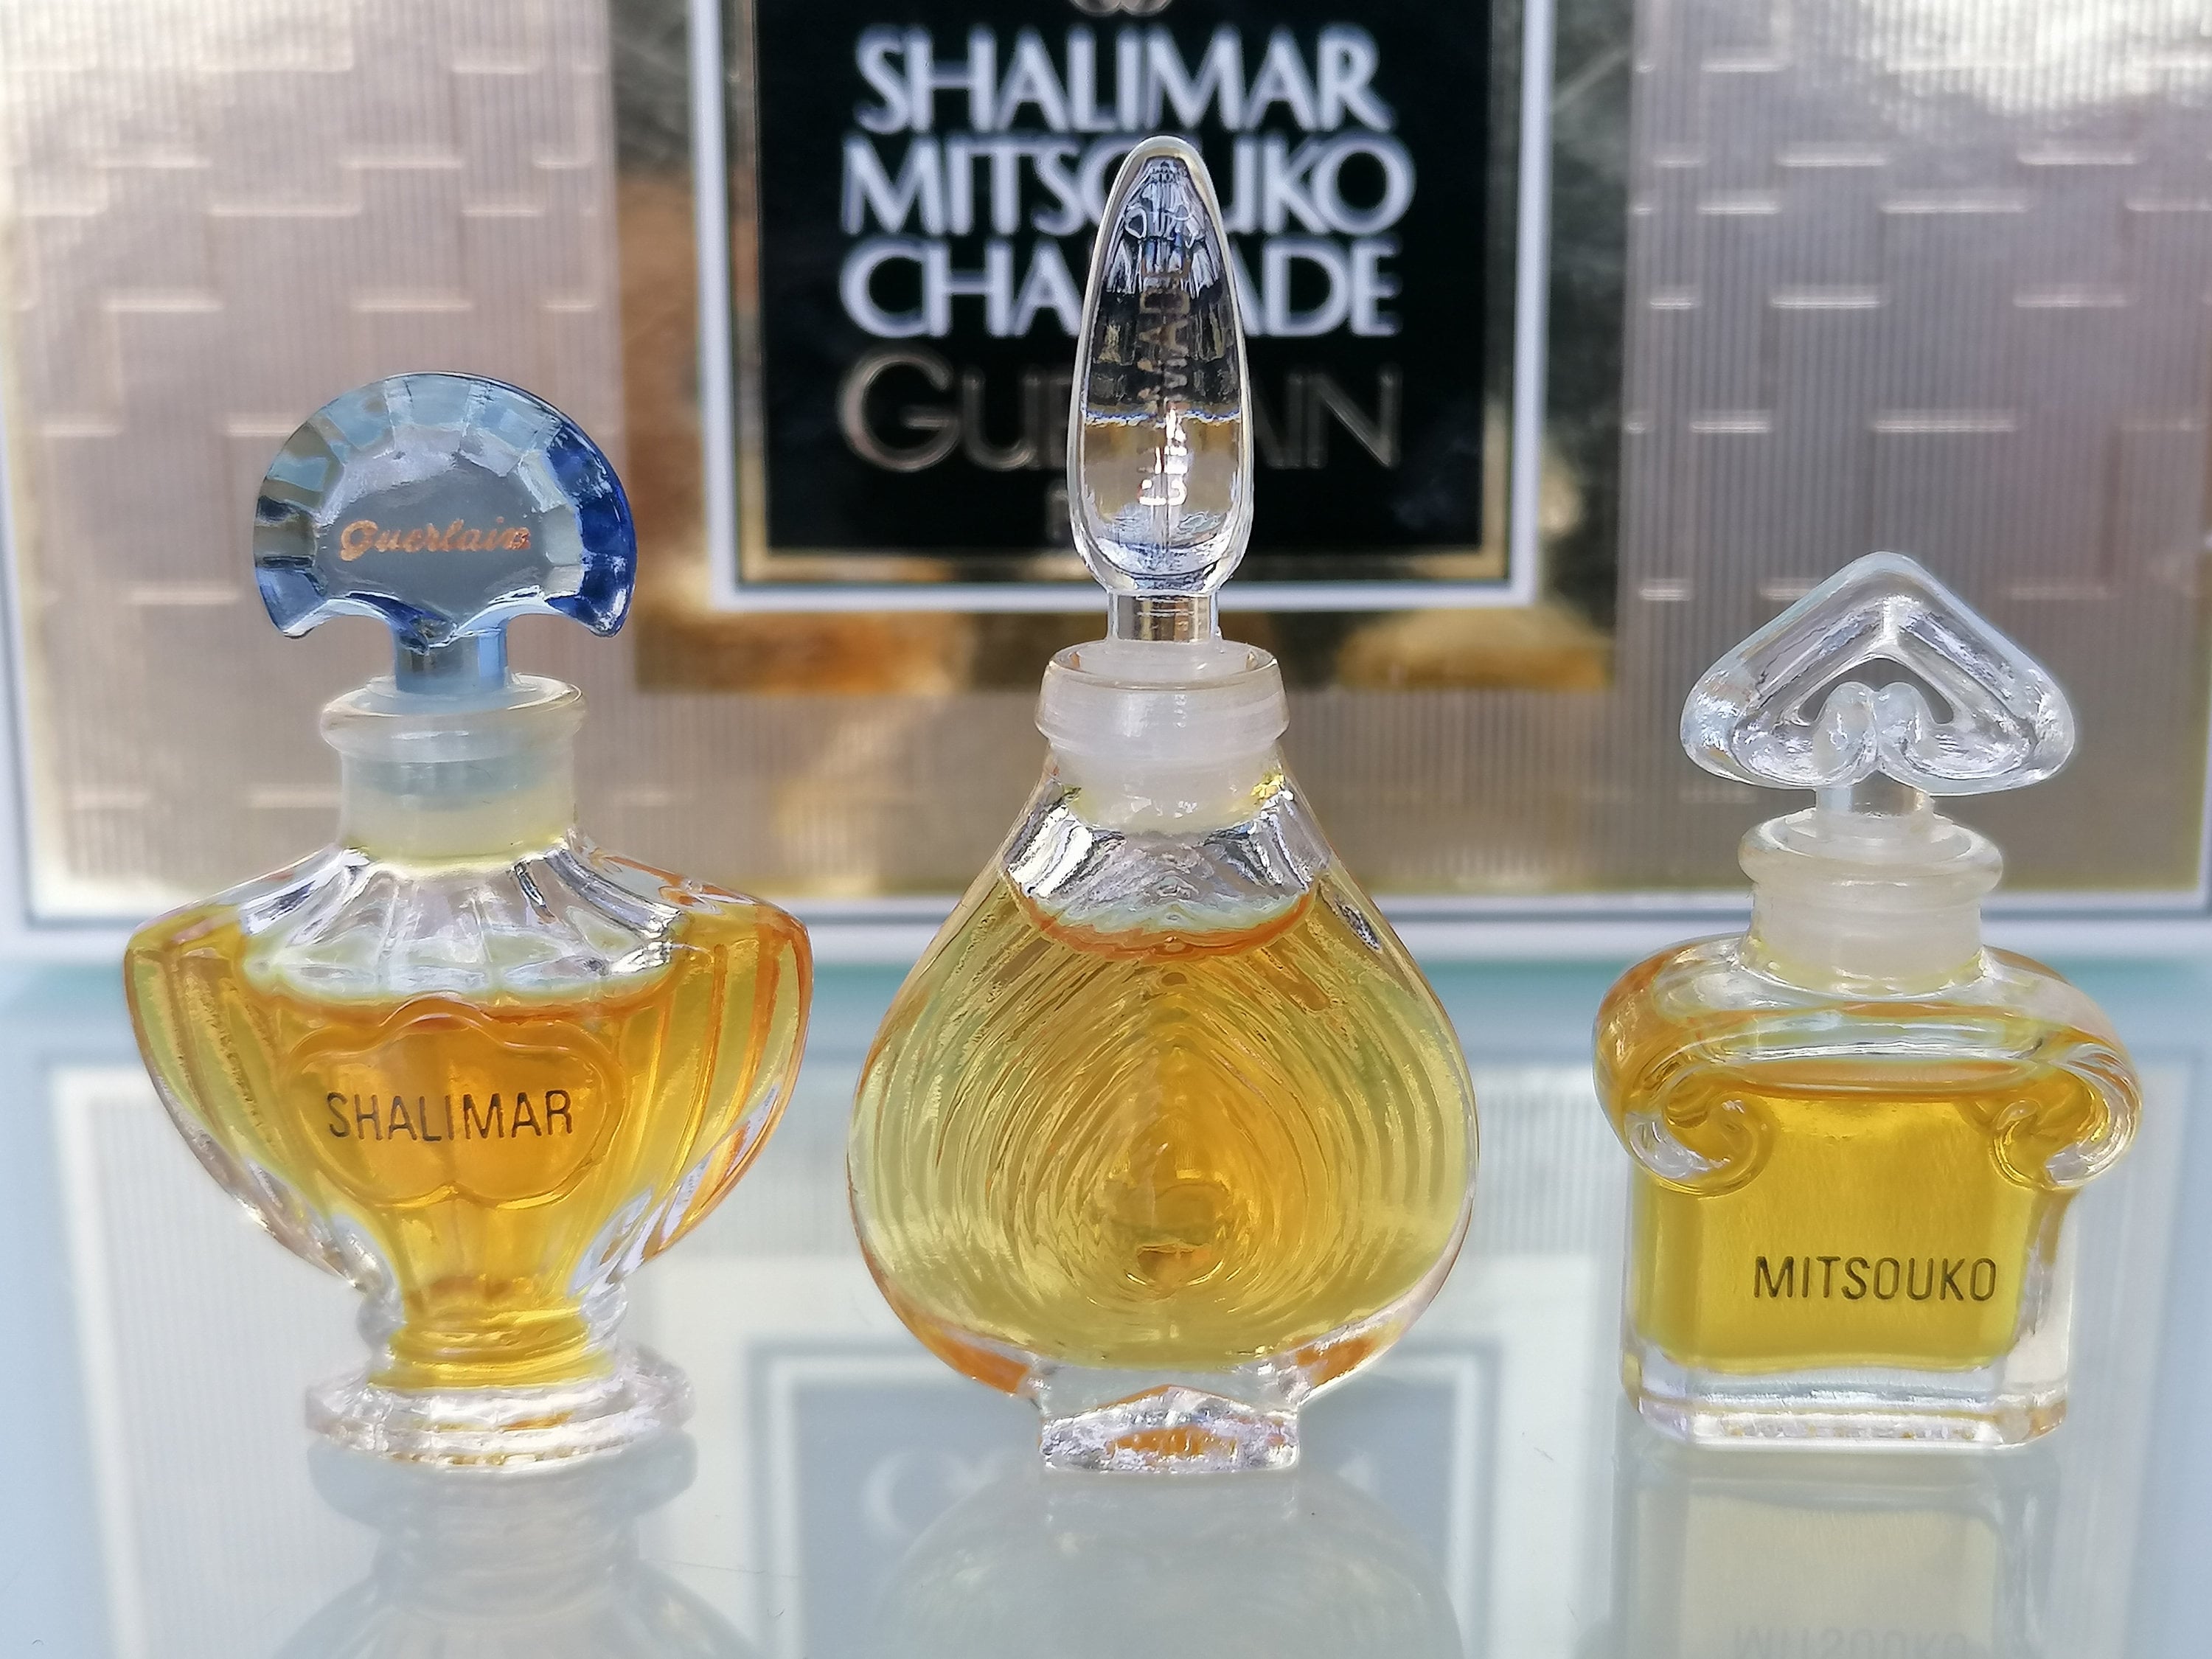 Perfume Shrine: Guerlain's Mademoiselle Guerlain: fragrance